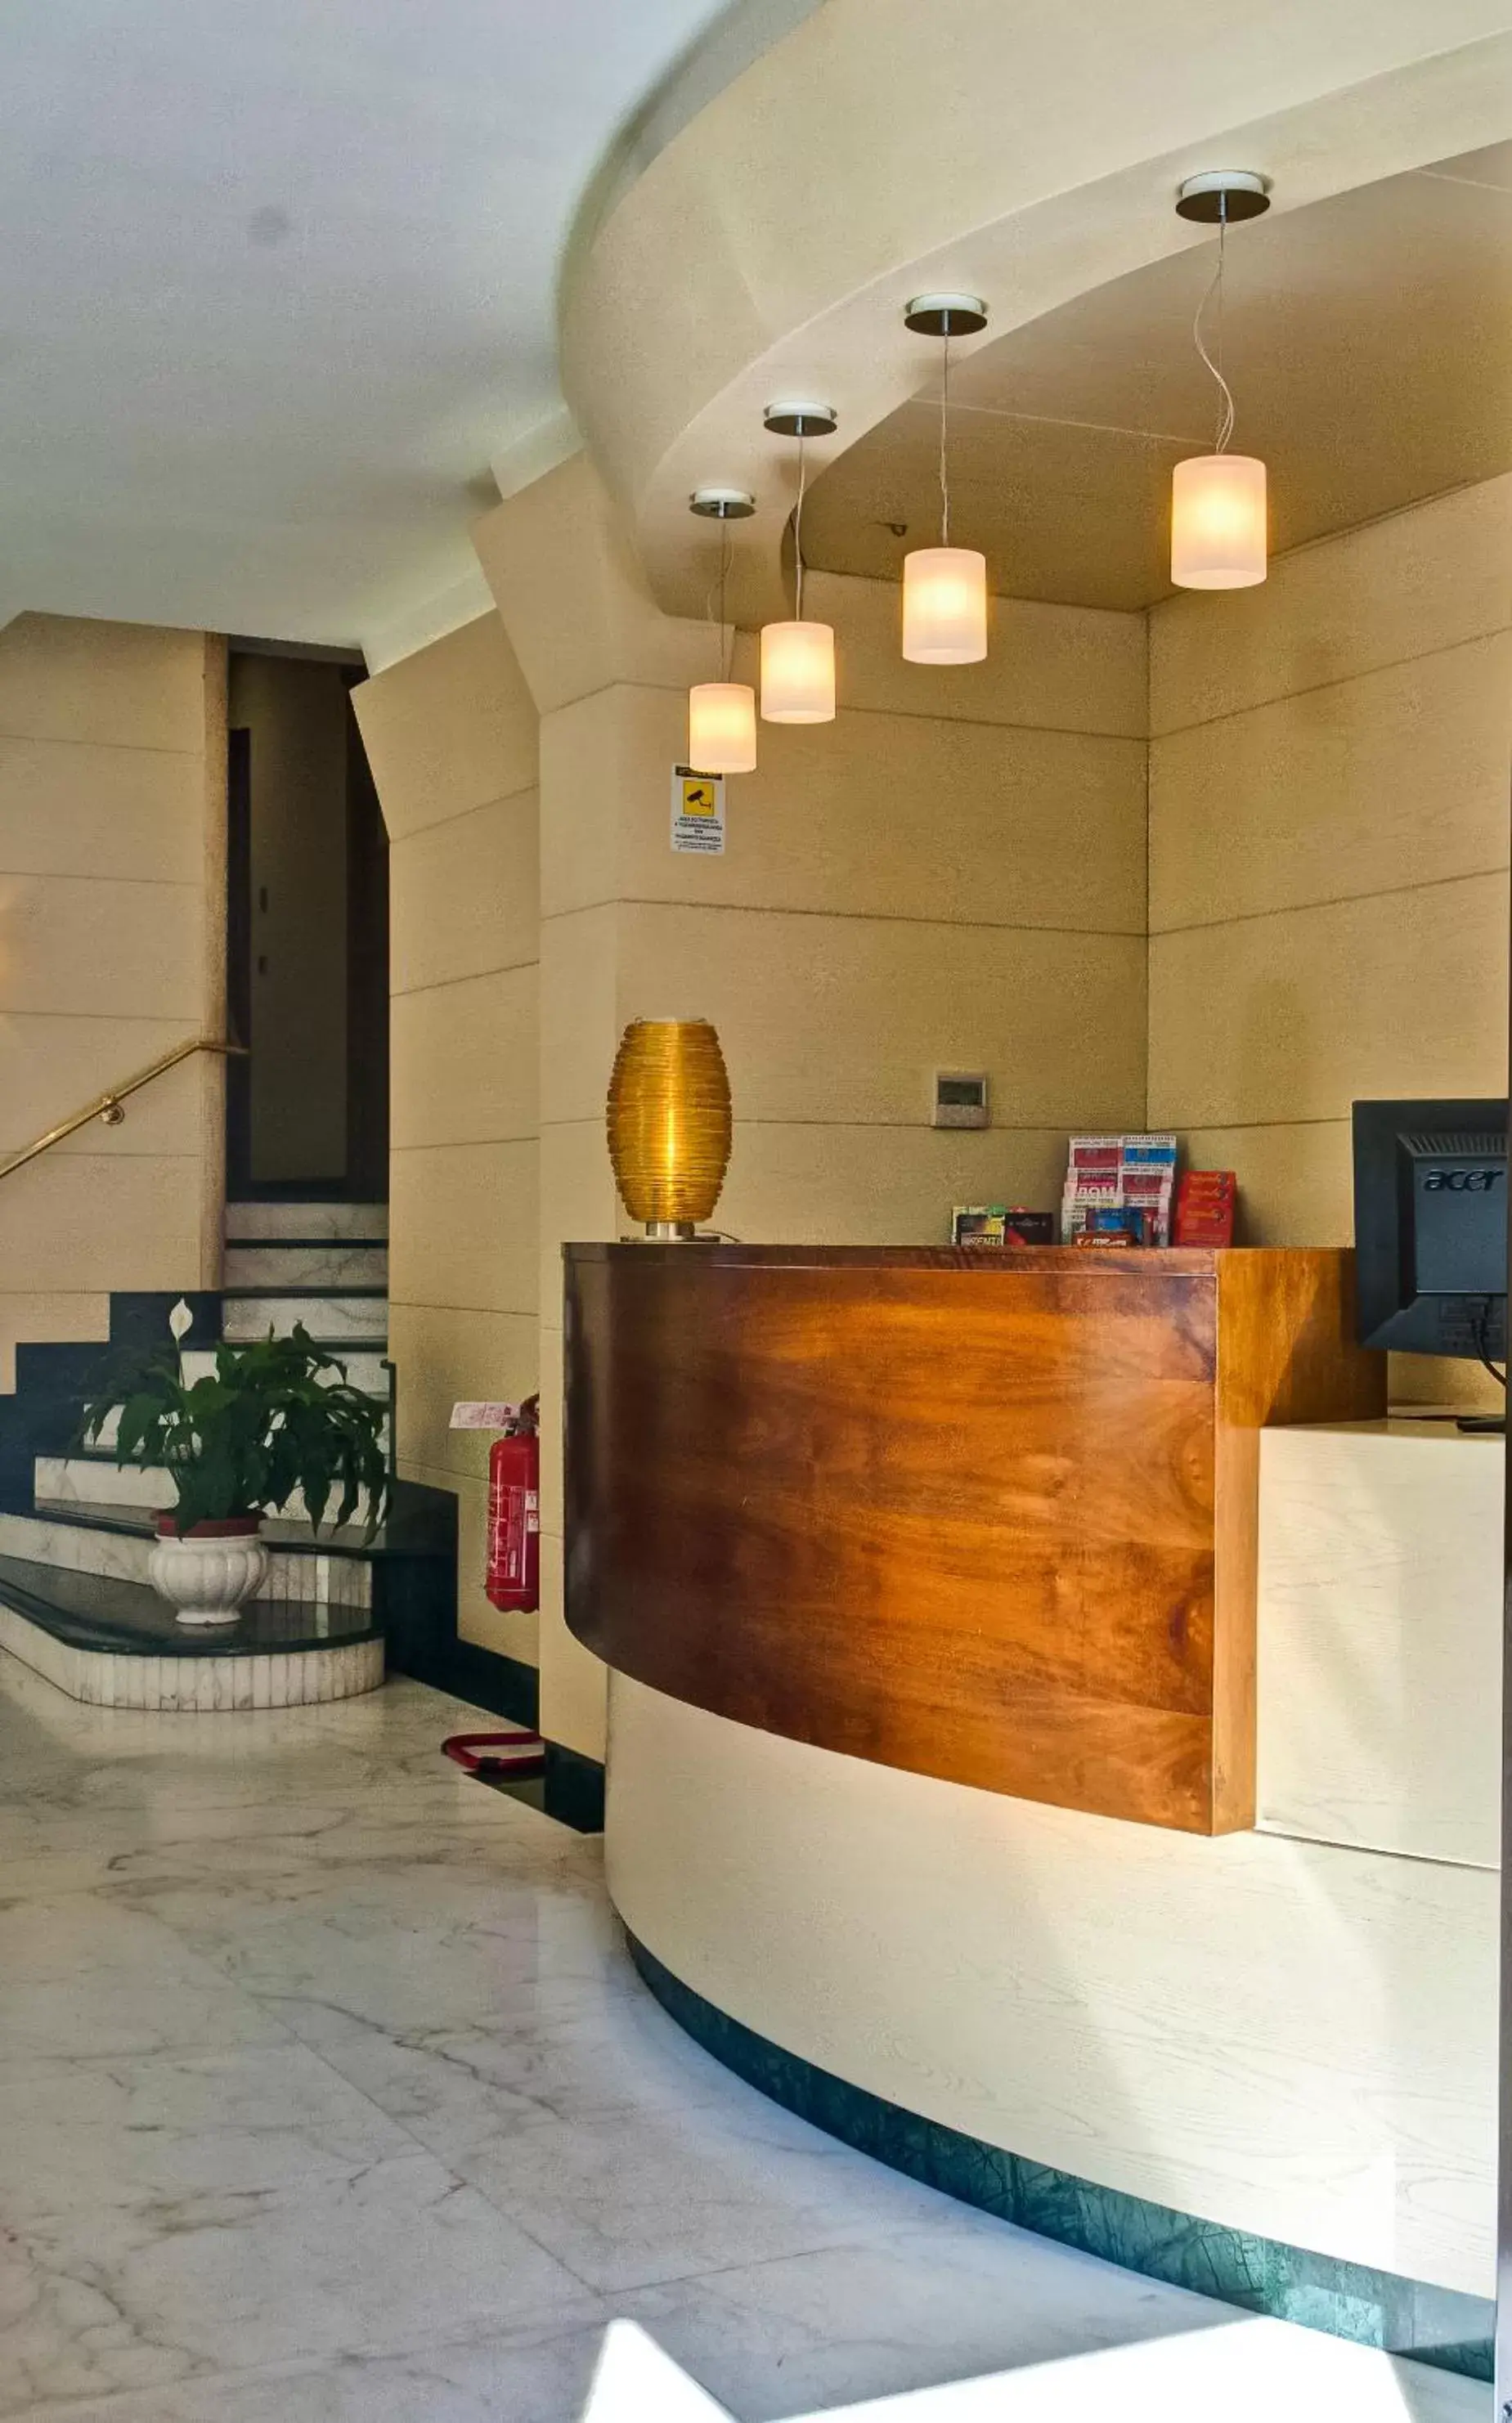 Lobby or reception, Lobby/Reception in Crosti Hotel